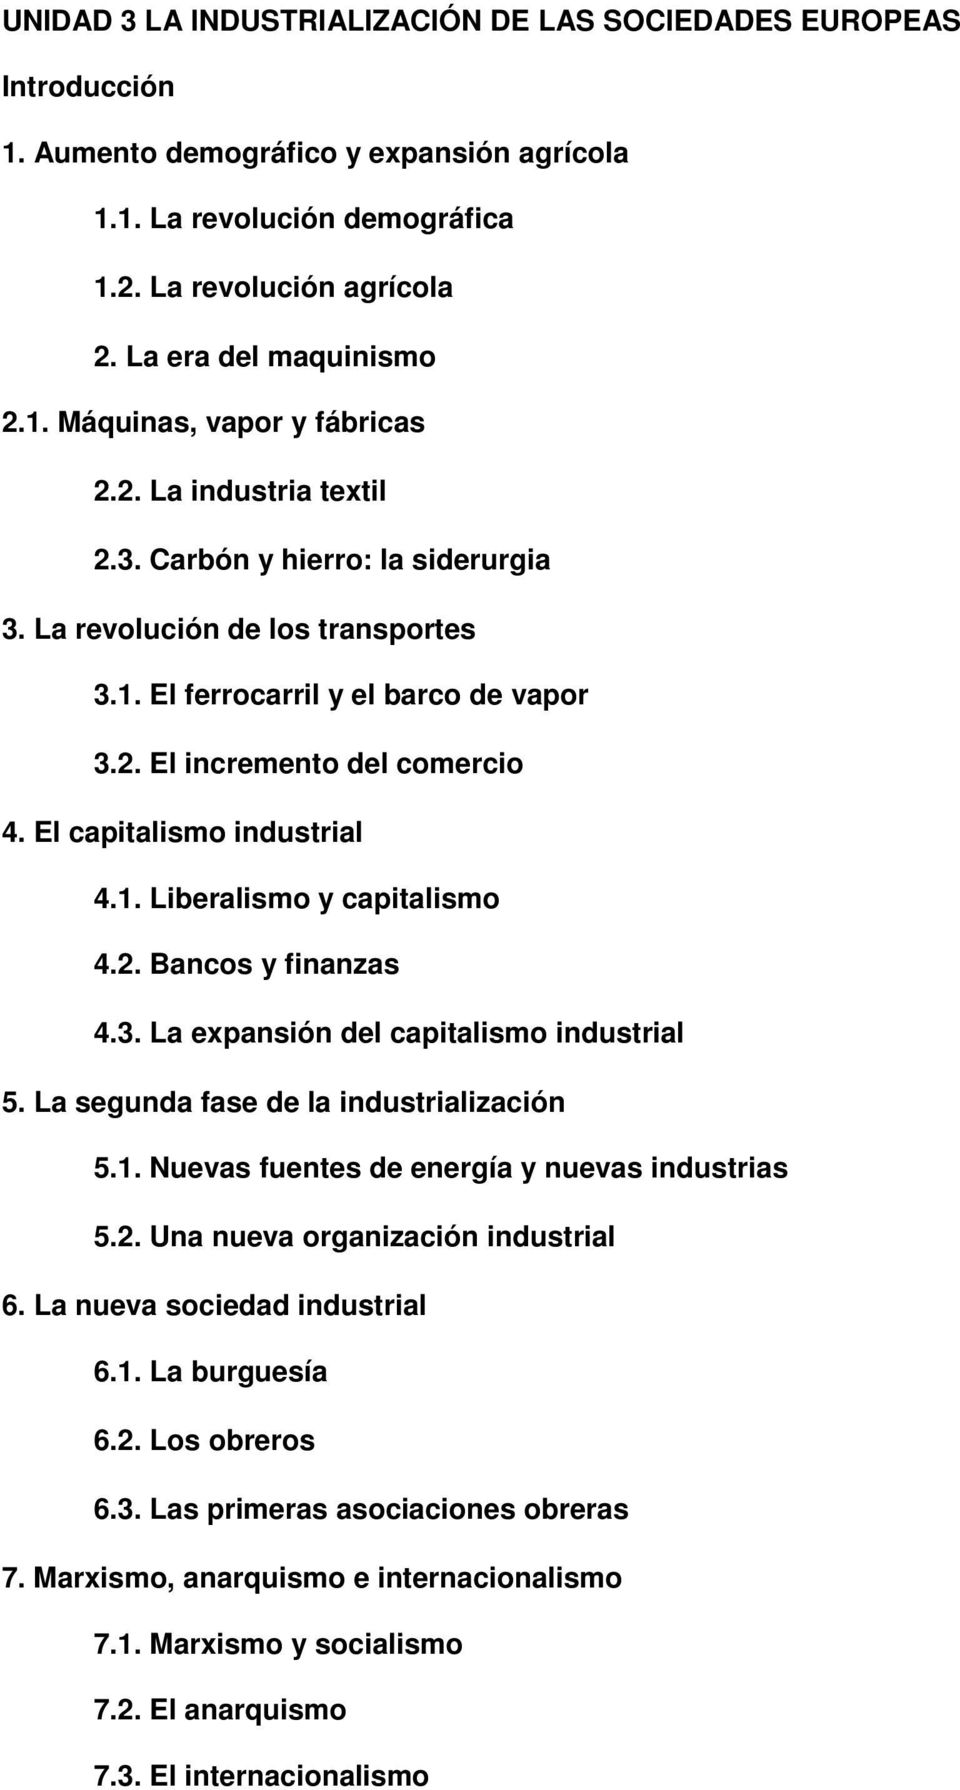 El capitalismo industrial 4.1. Liberalismo y capitalismo 4.2. Bancos y finanzas 4.3. La expansión del capitalismo industrial 5. La segunda fase de la industrialización 5.1. Nuevas fuentes de energía y nuevas industrias 5.